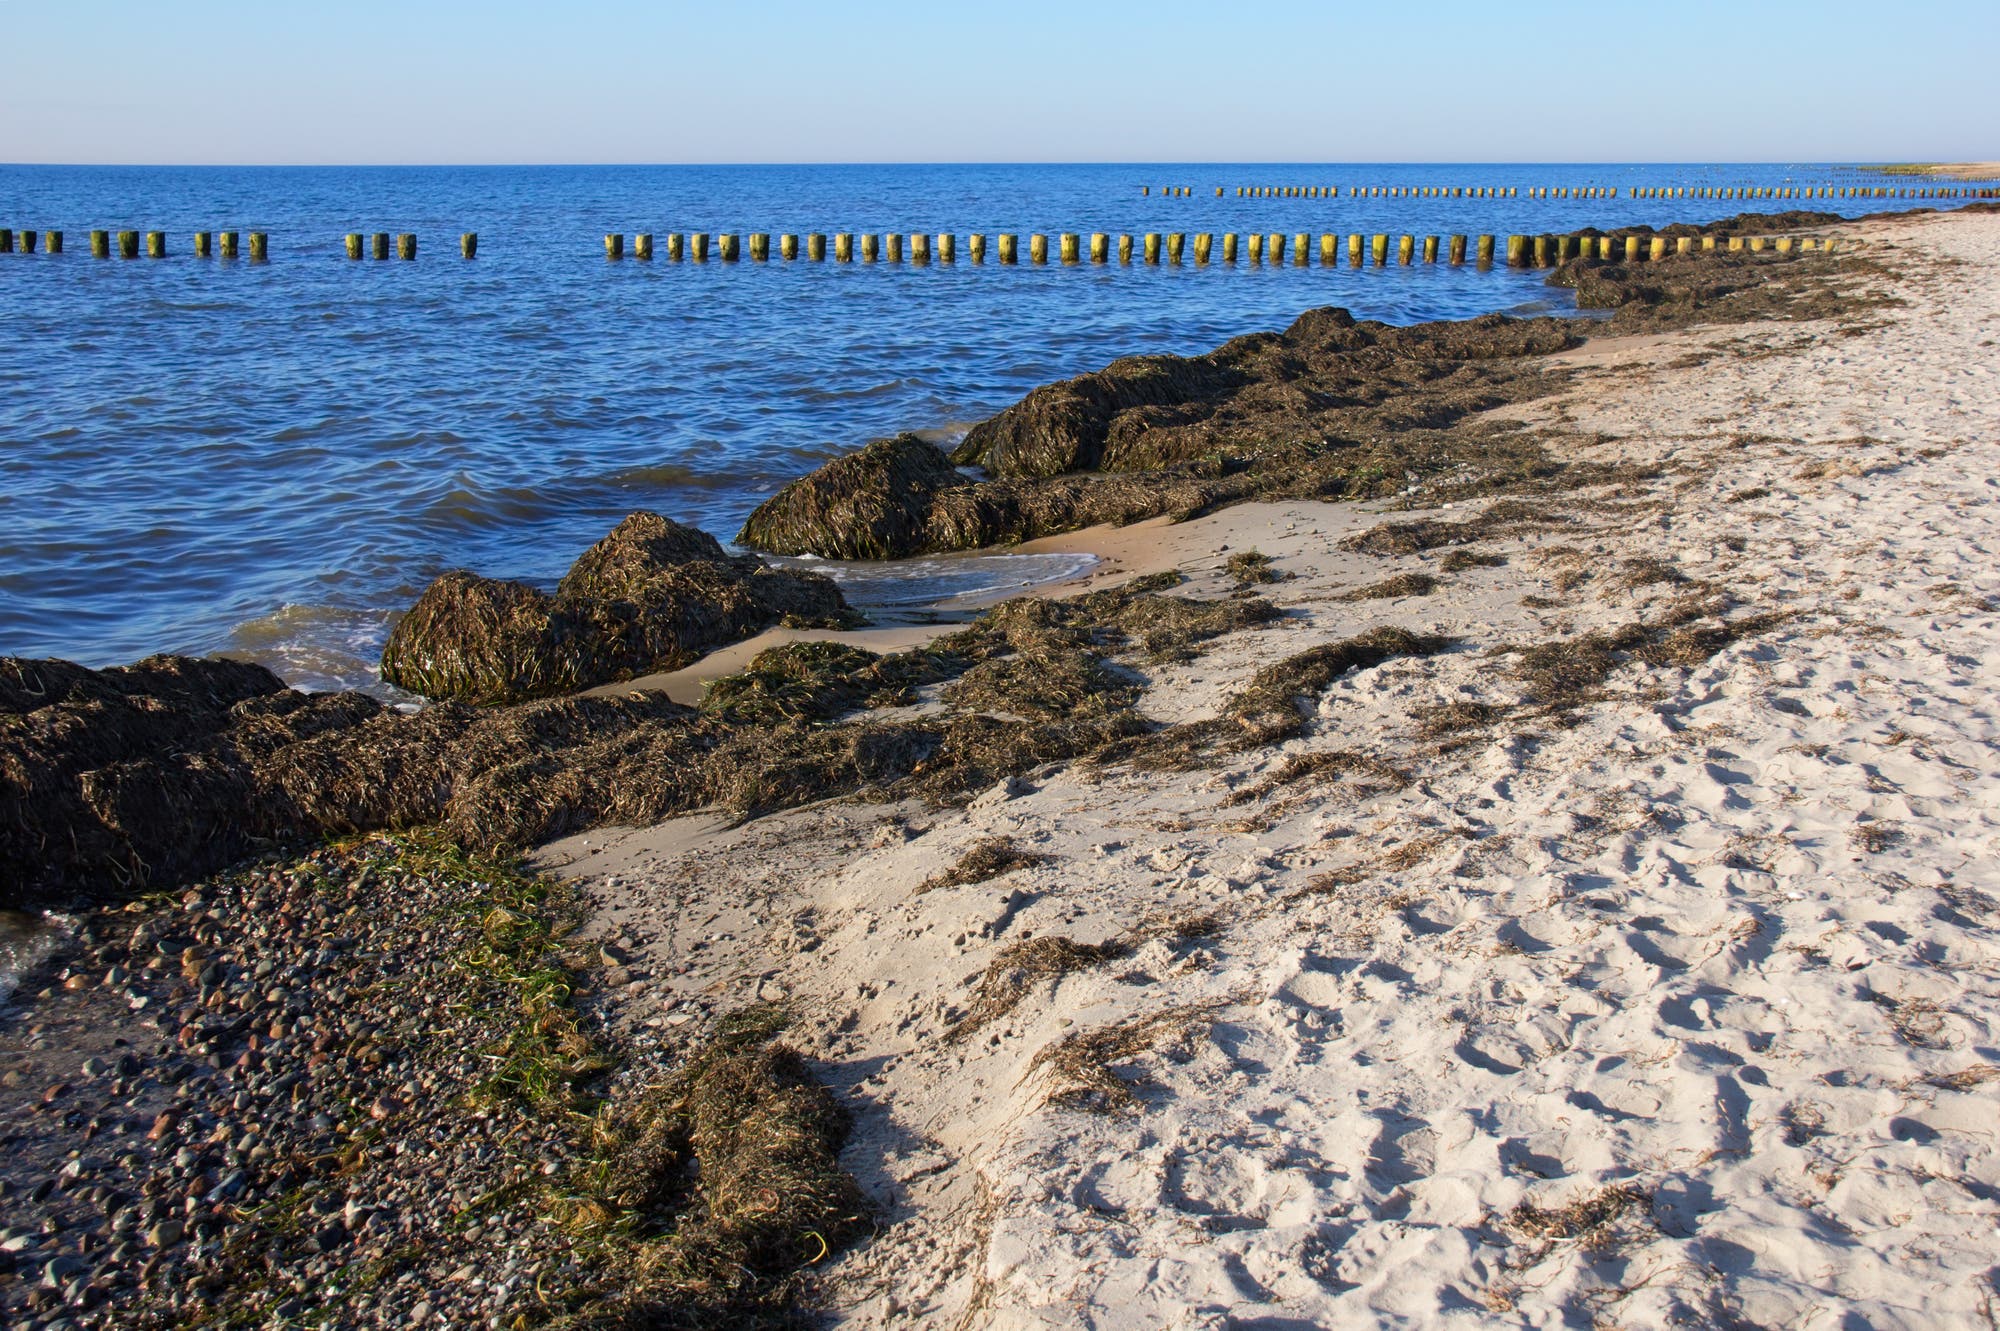 Küste an der Nordsee, Seegras liegt in großen Haufen an der Wasserlinie entlang.